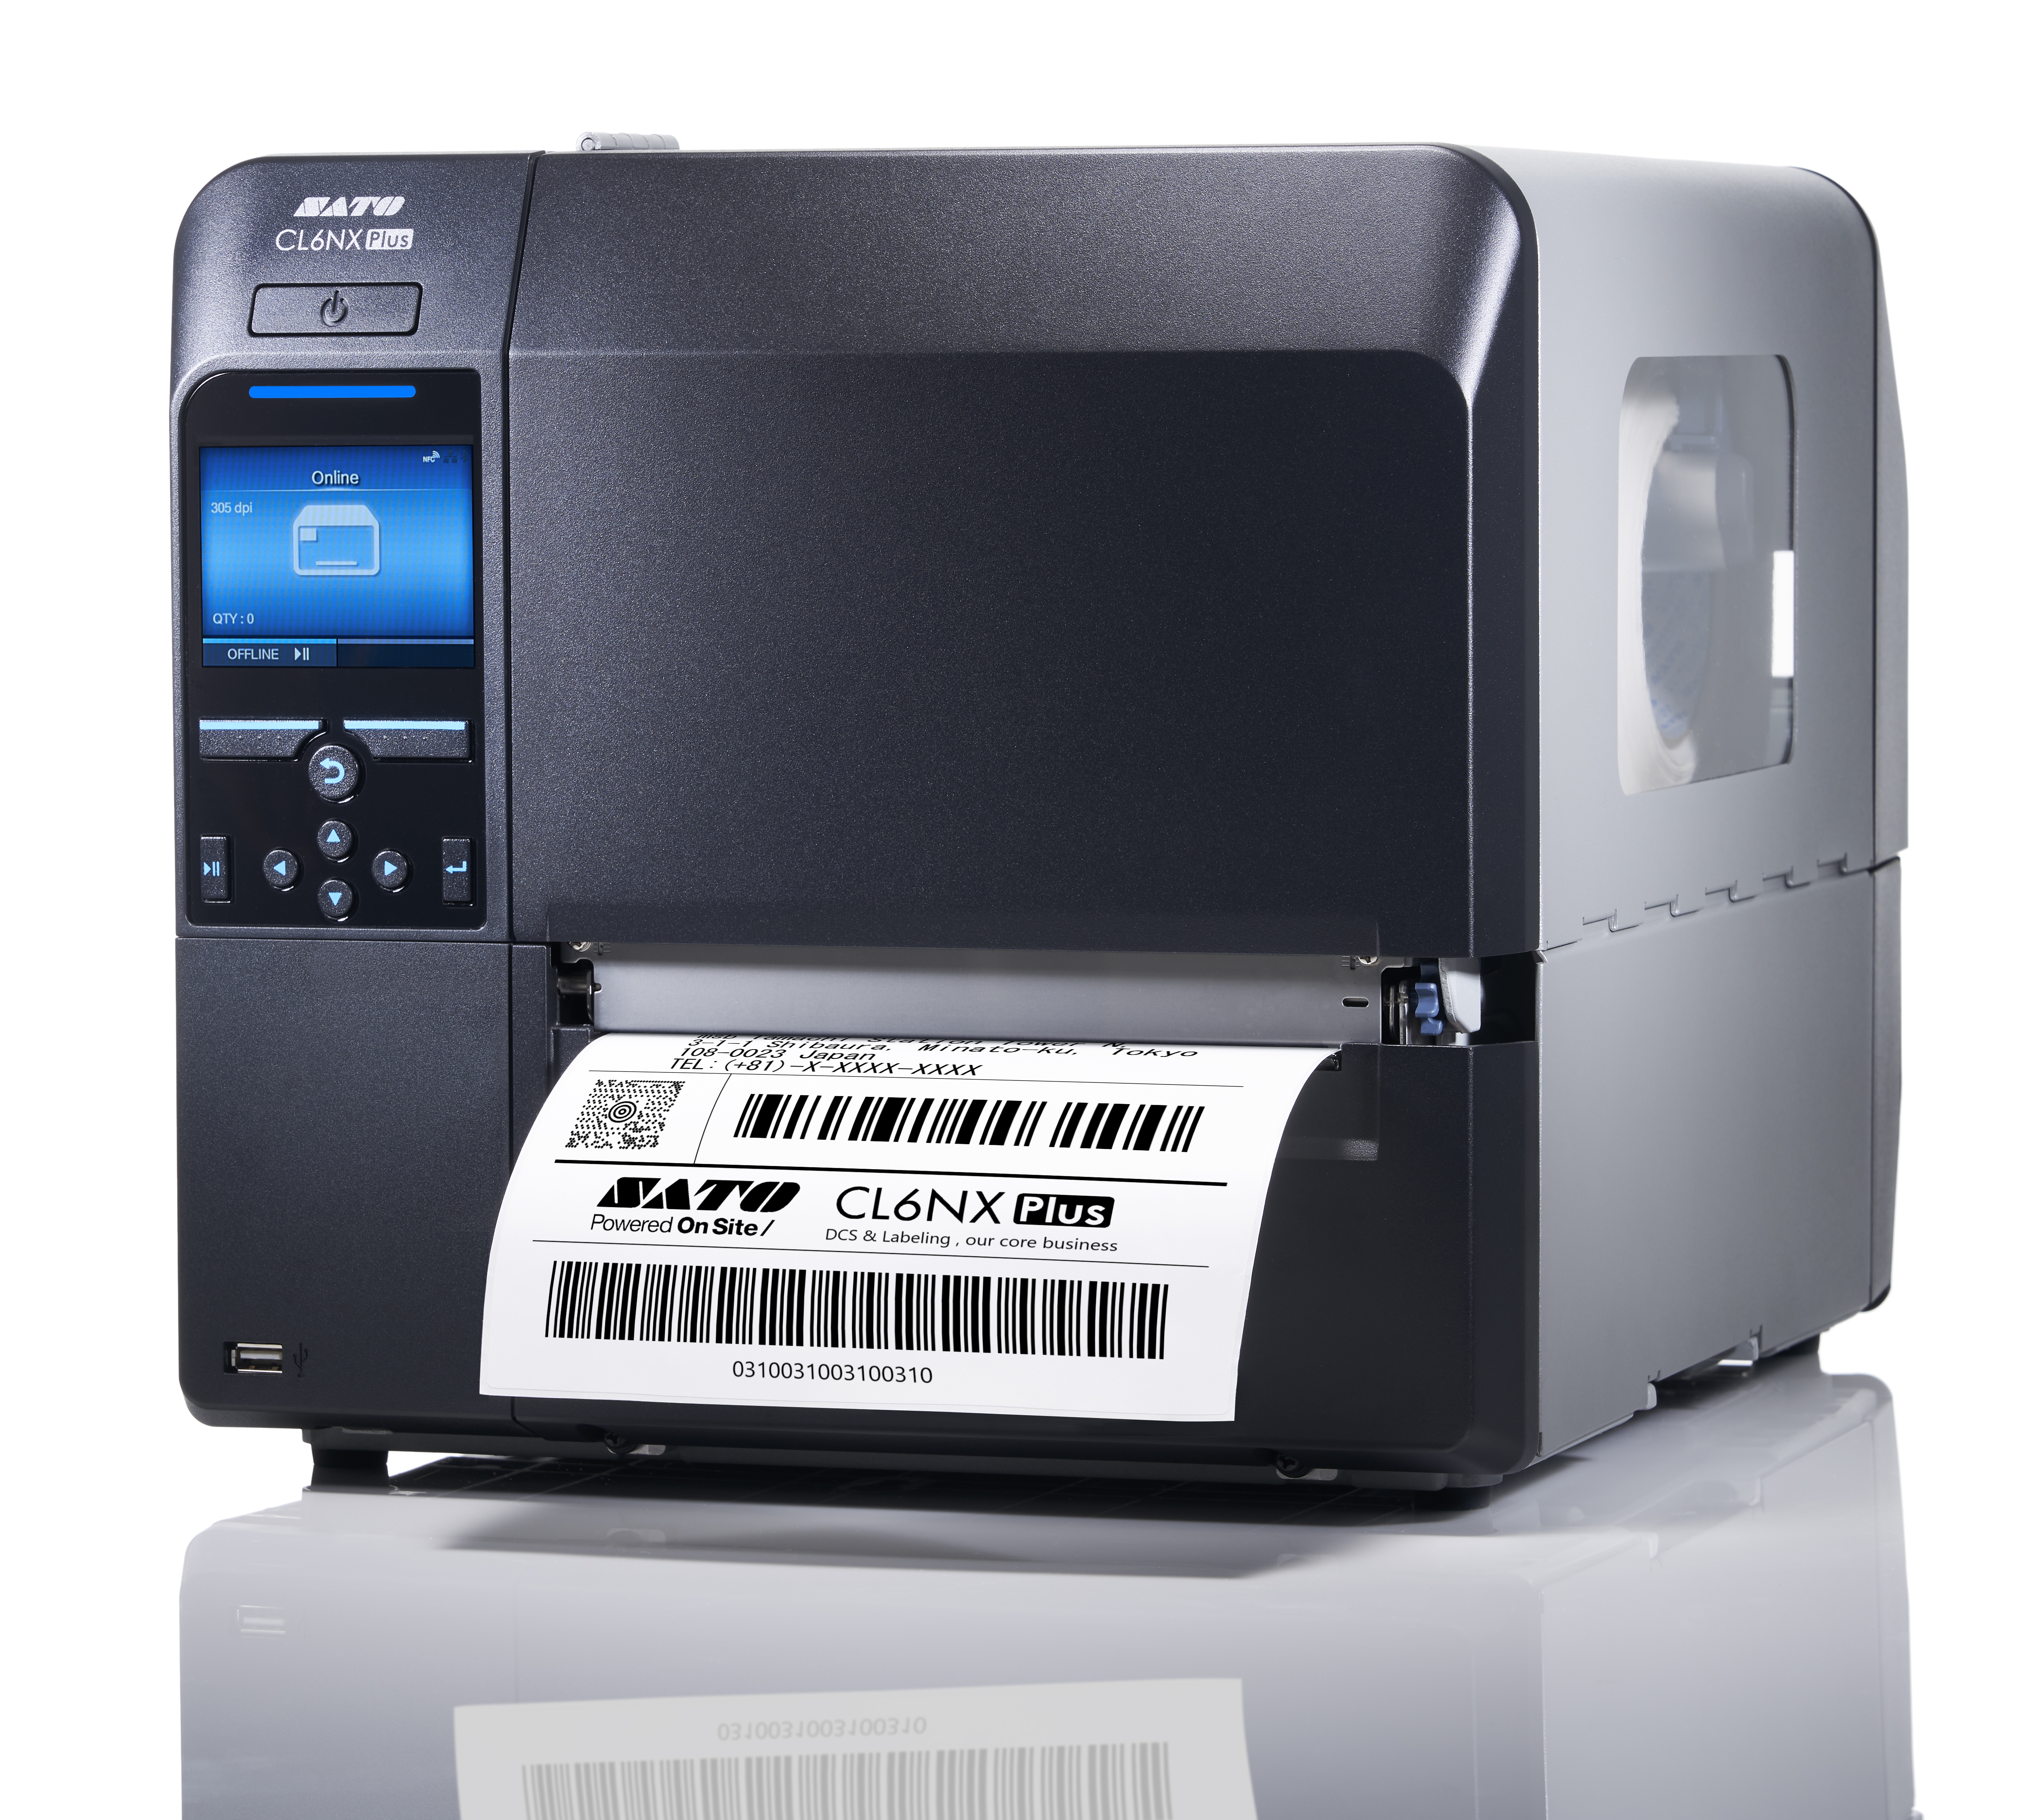 Impresora de etiquetas Sato CL6NX-PLUS